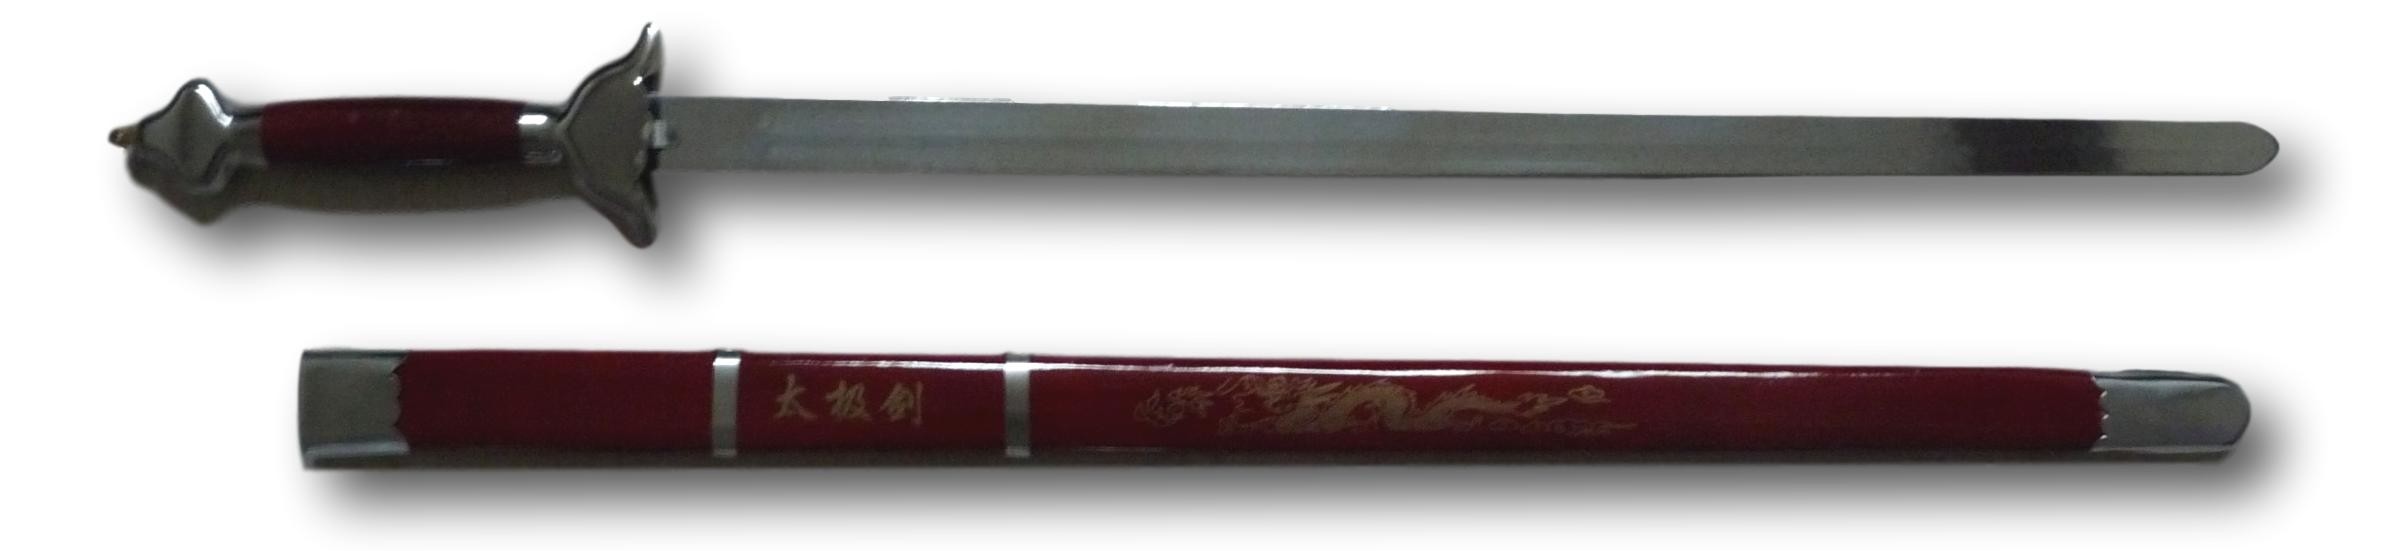 Épée en métal semi-flexible et son fourreau